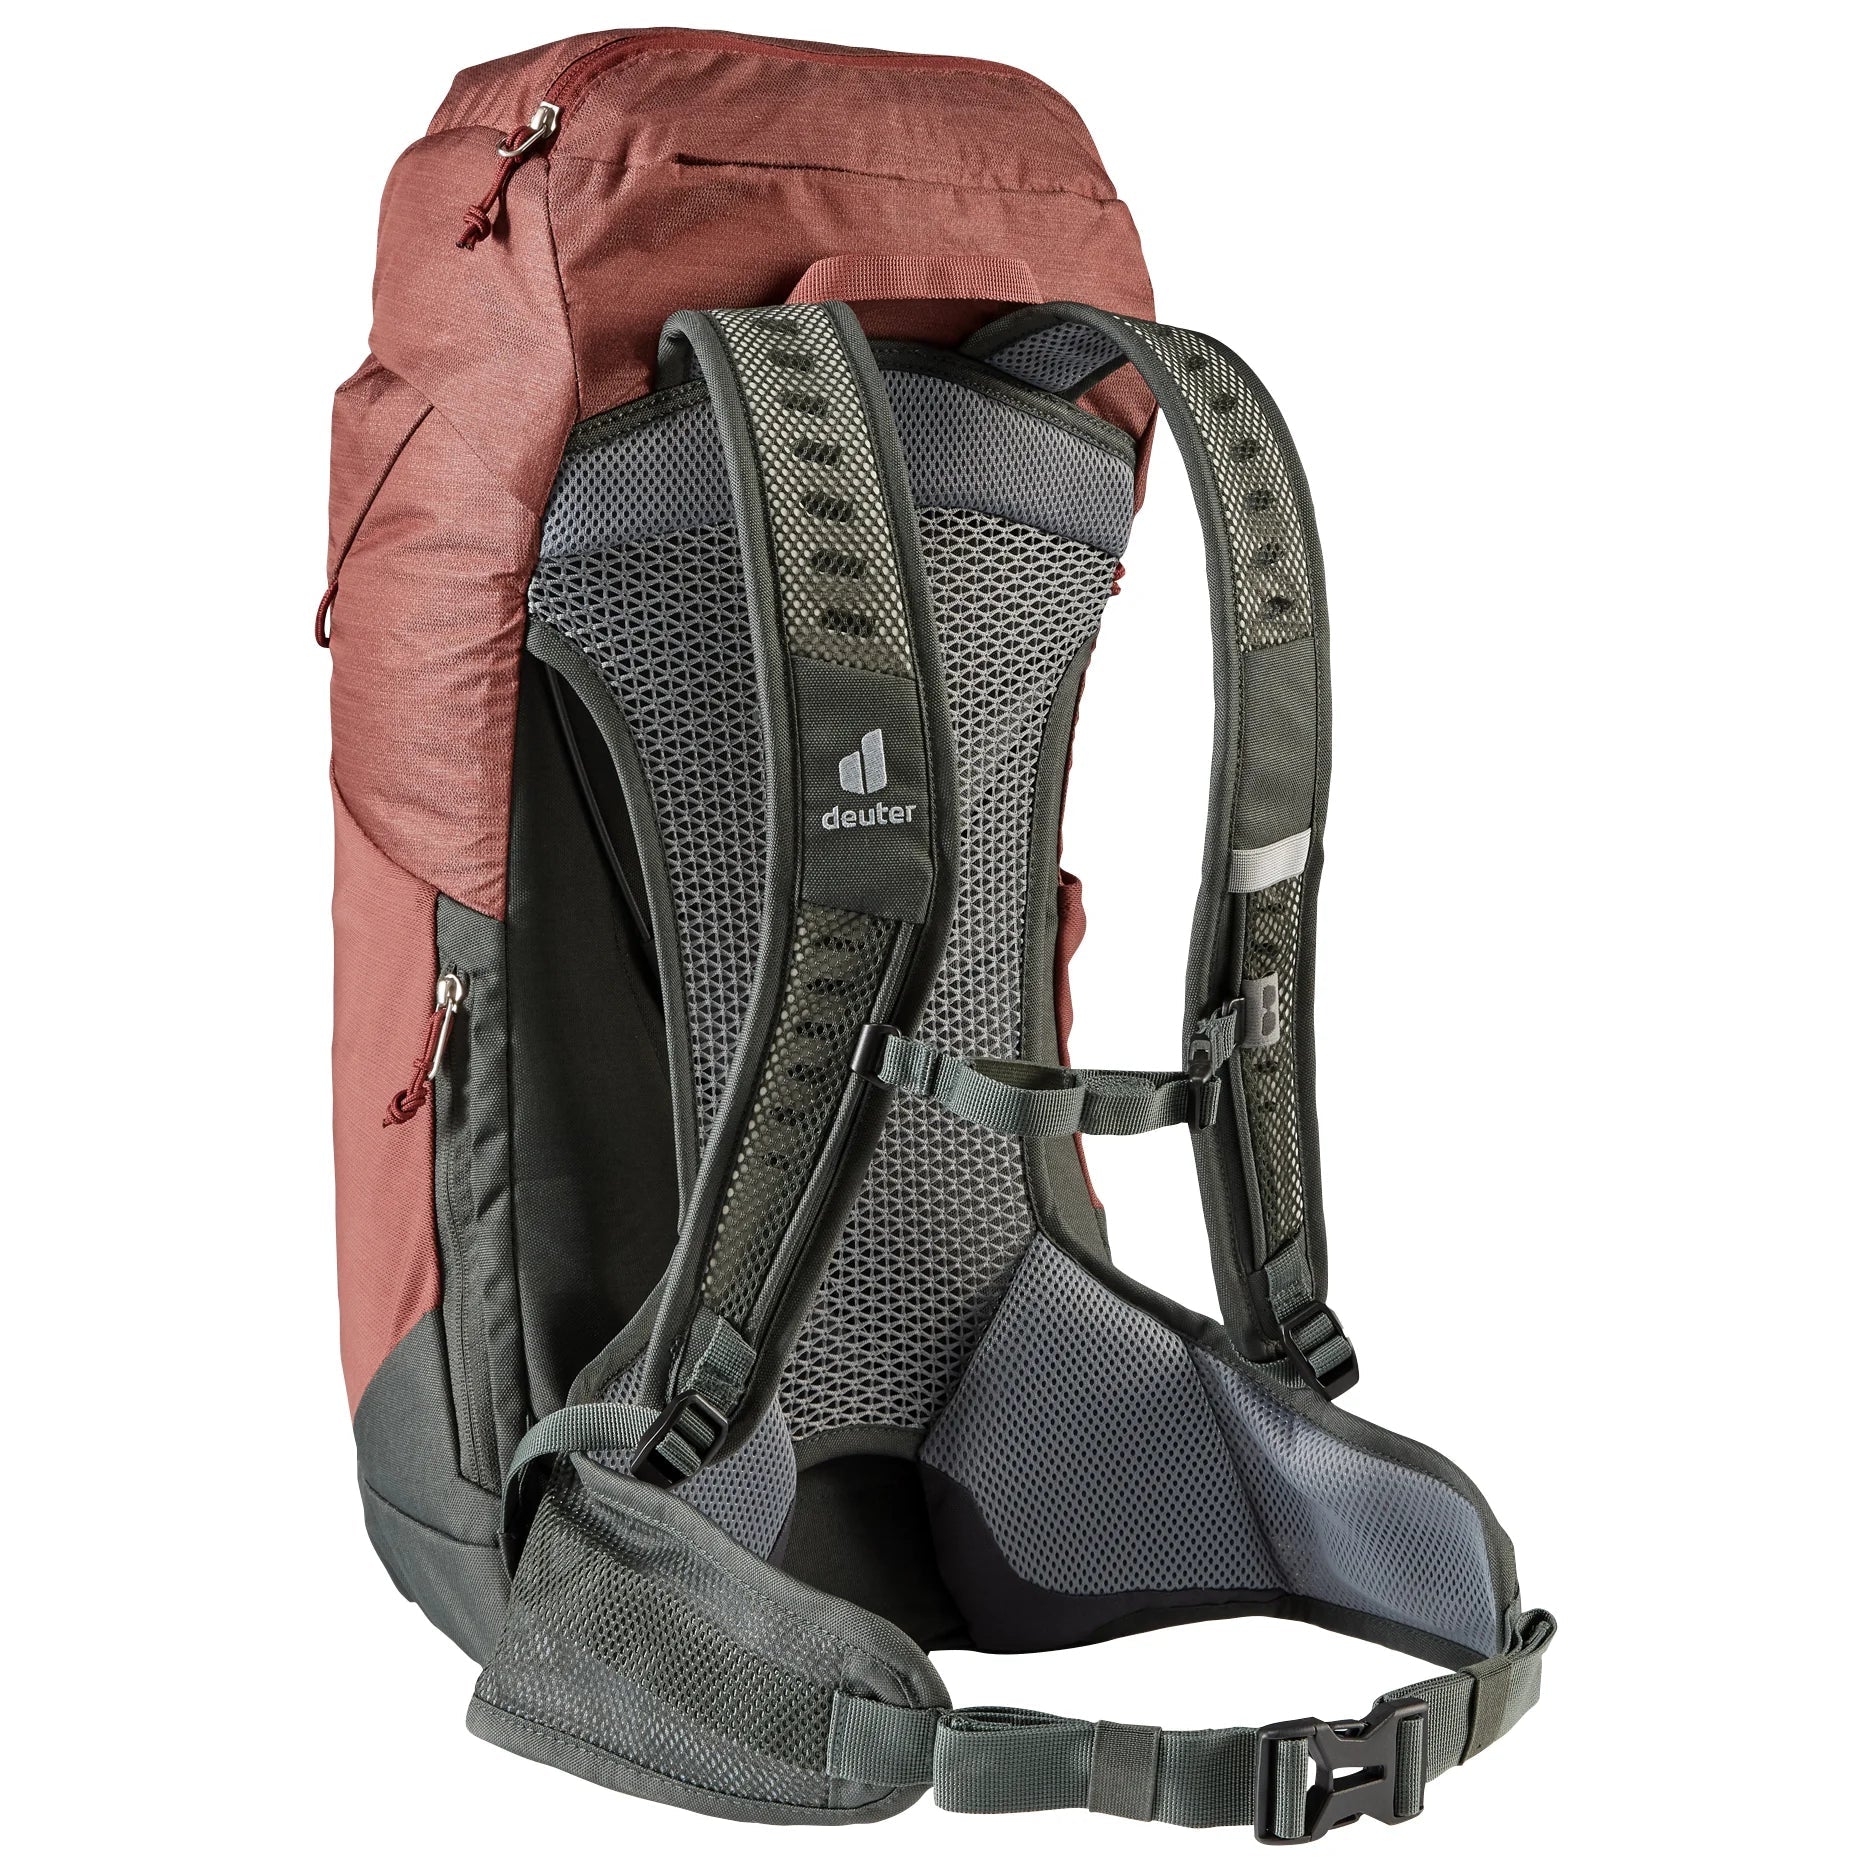 Deuter Travel AC Lite 24 hiking backpack 56 cm - Paprika Redwood